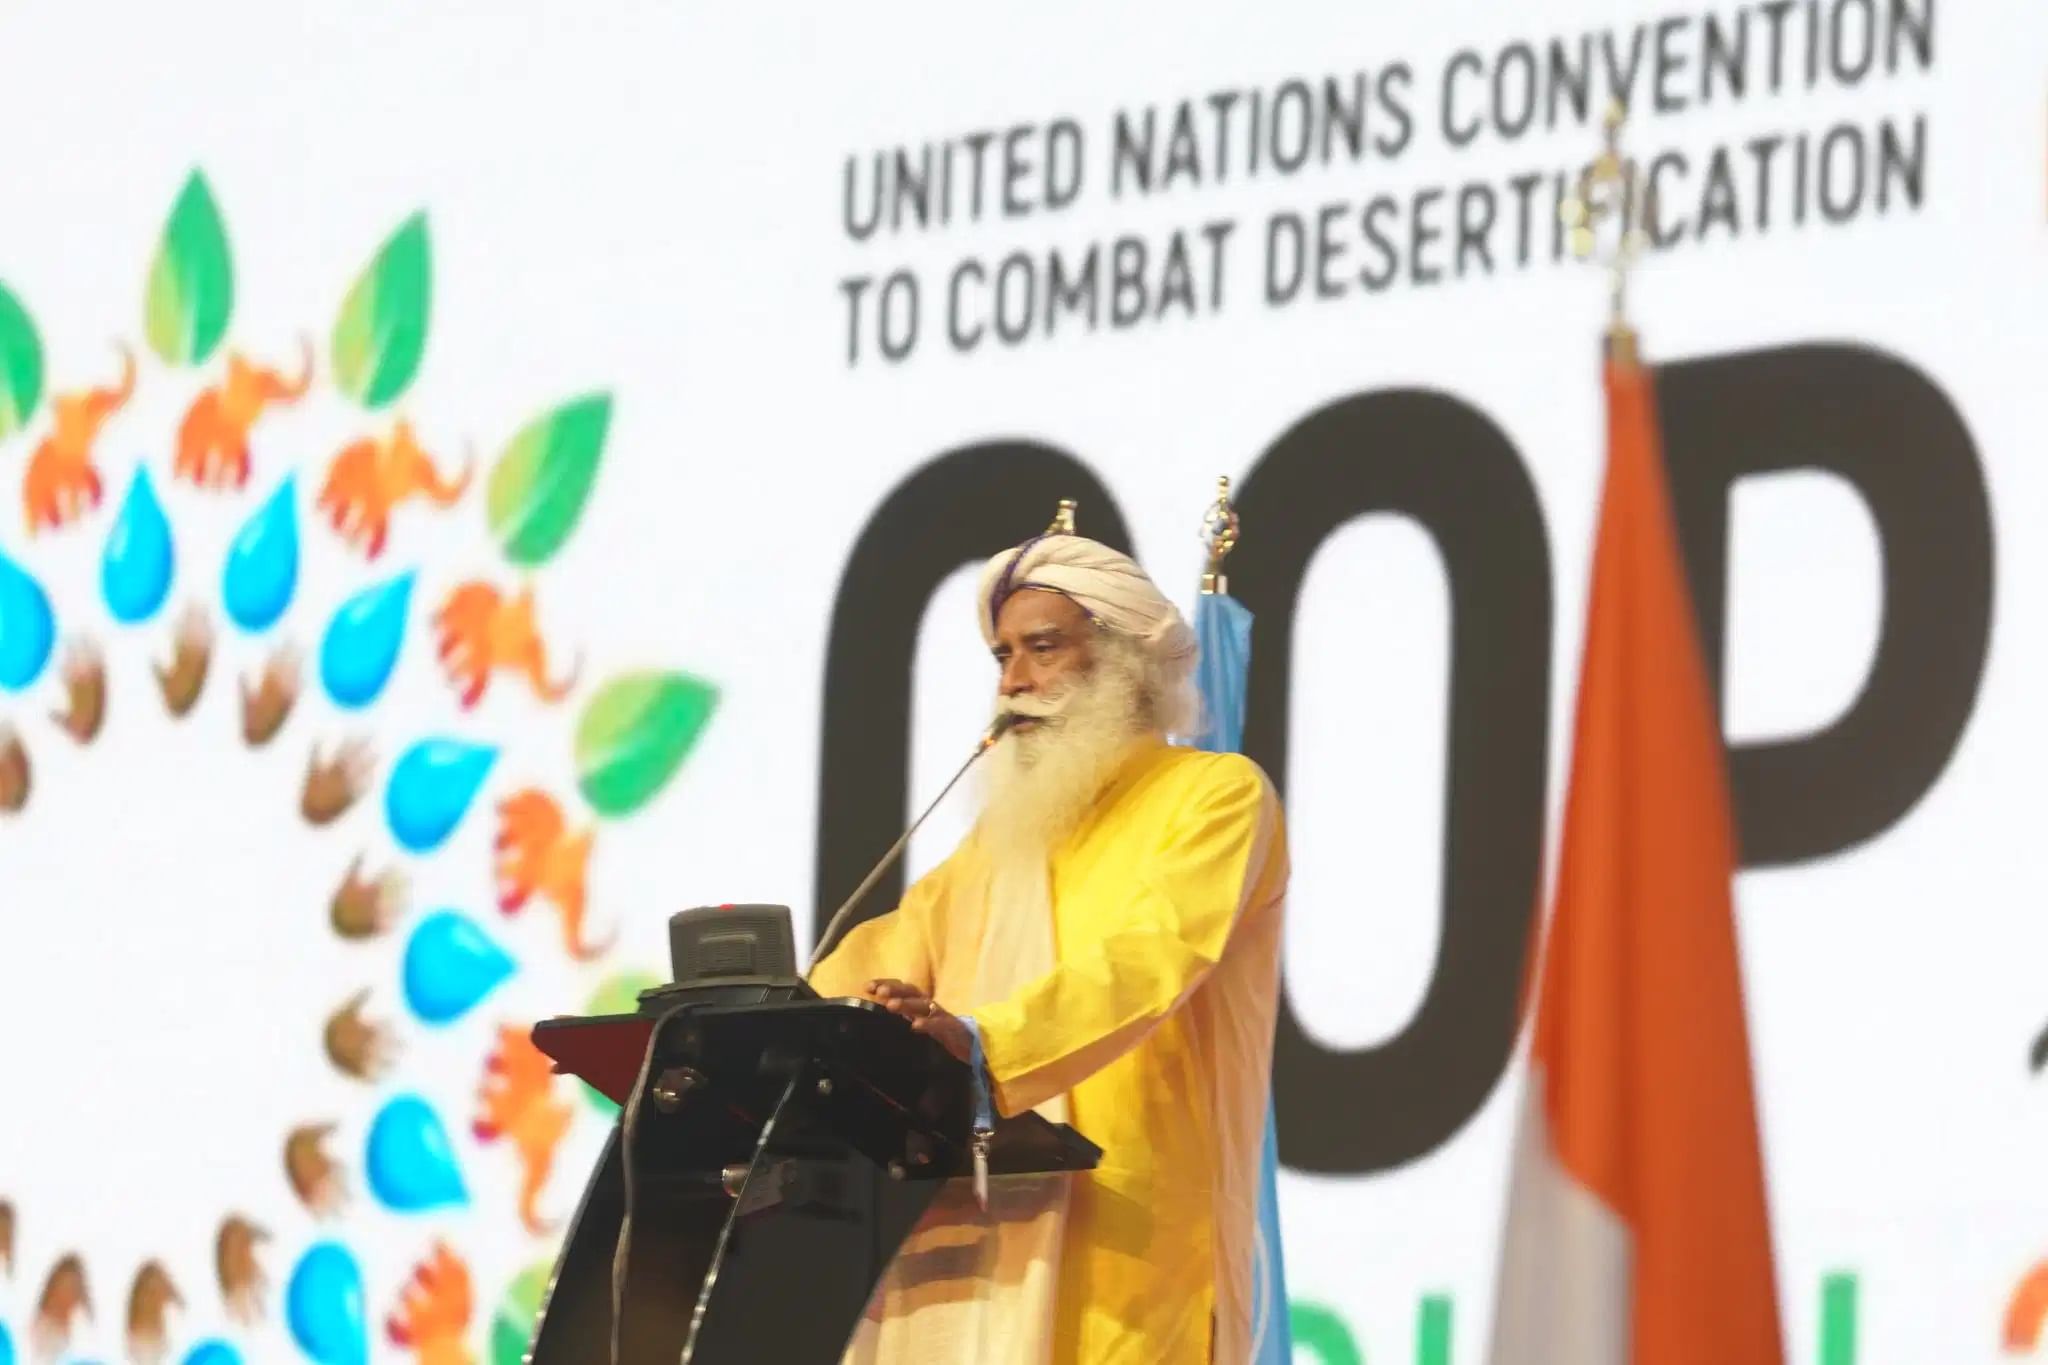 சத்குரு 9 மே 2022 அன்று அபிட்ஜான், கோட் டி ஐவரில், UNCCD COP15ல் உரையாற்றுகிறார்.